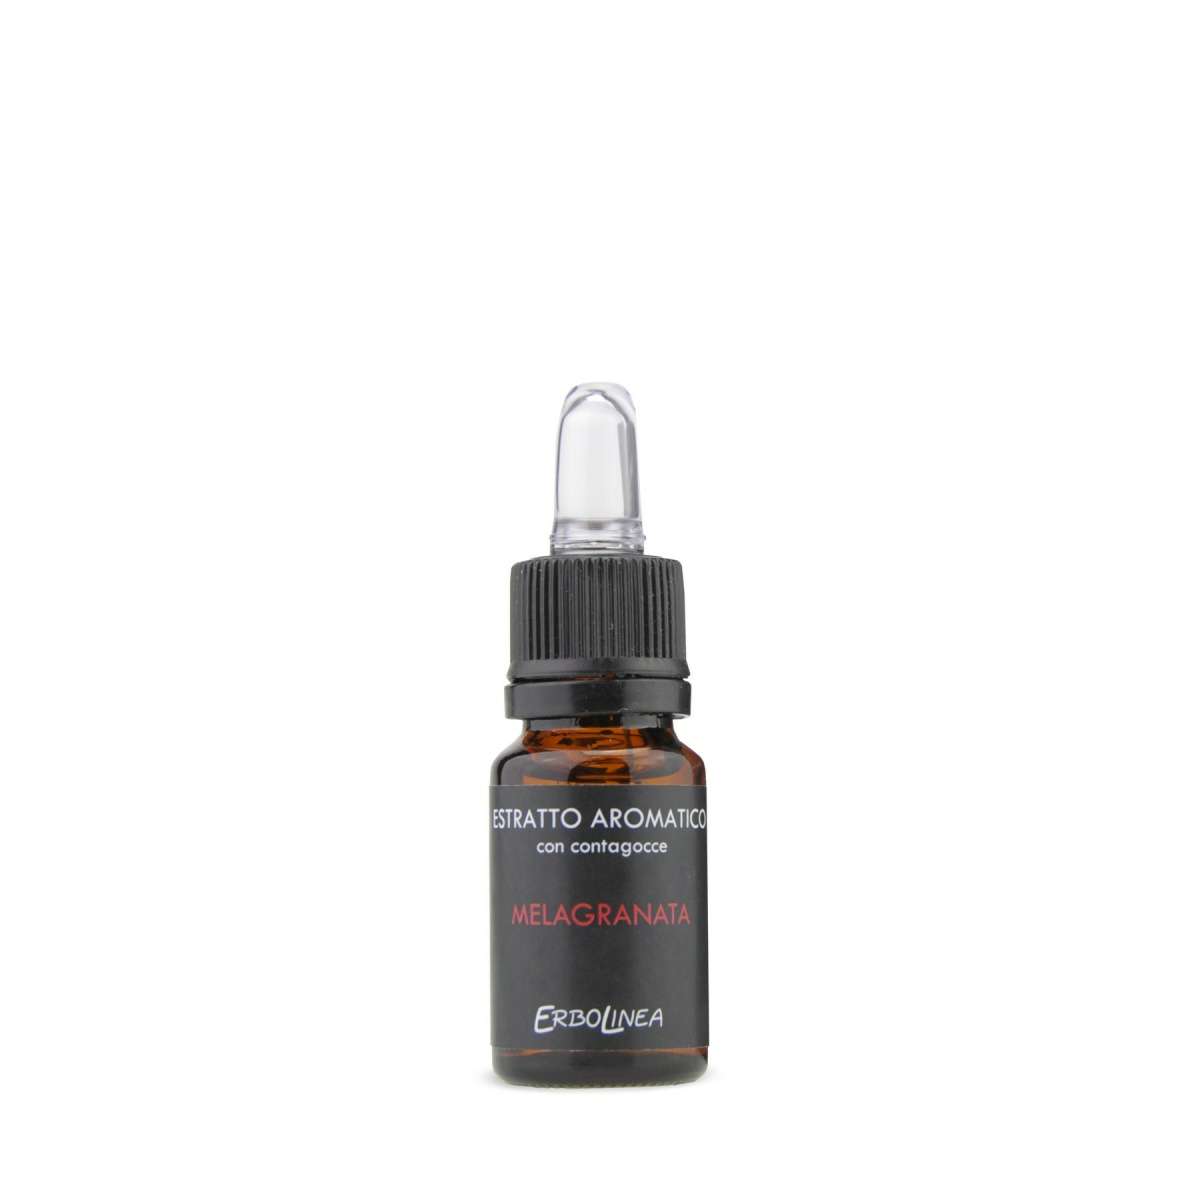 Immagine del prodotto Estratto Aromatico con Contagocce Melagranata 10 ml | Erbolinea